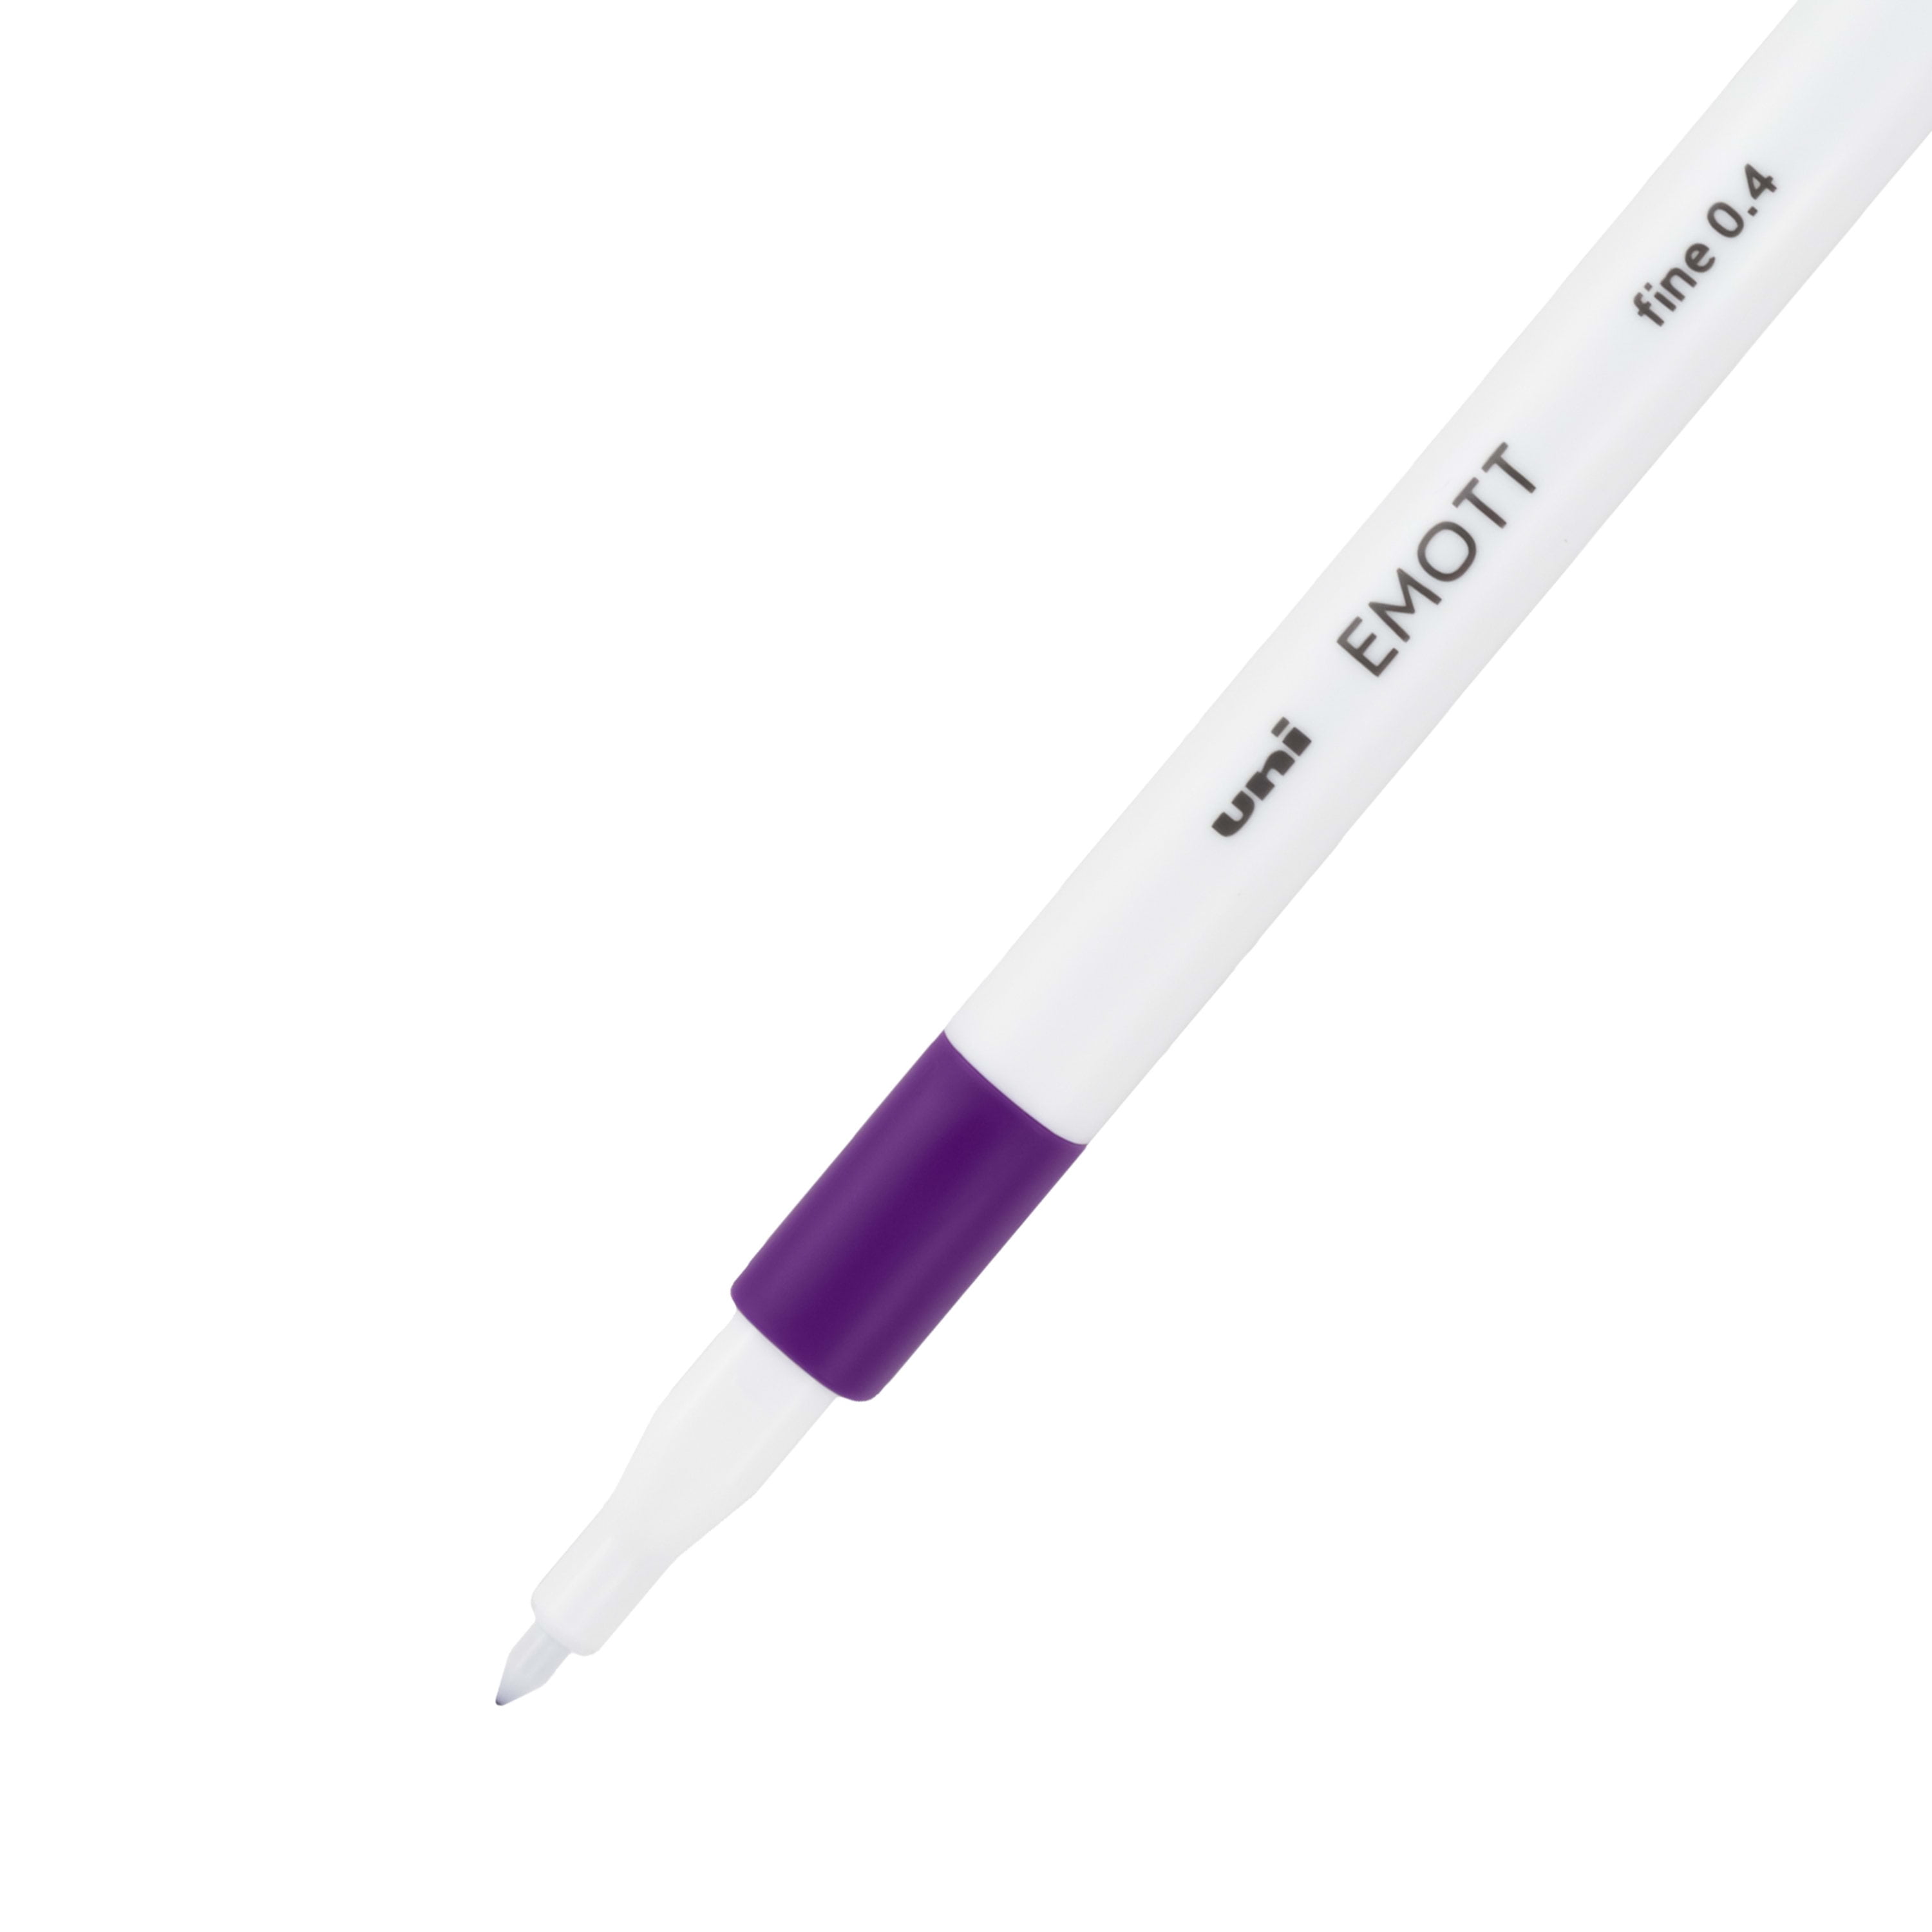 Uniball Emott Fineliner Pen 5 Pack Vintage, Office Supplies, School  Supplies, Artist Supplies, Pens, Ballpoint Pen, Colored Pens, Gel Pens,  Fine